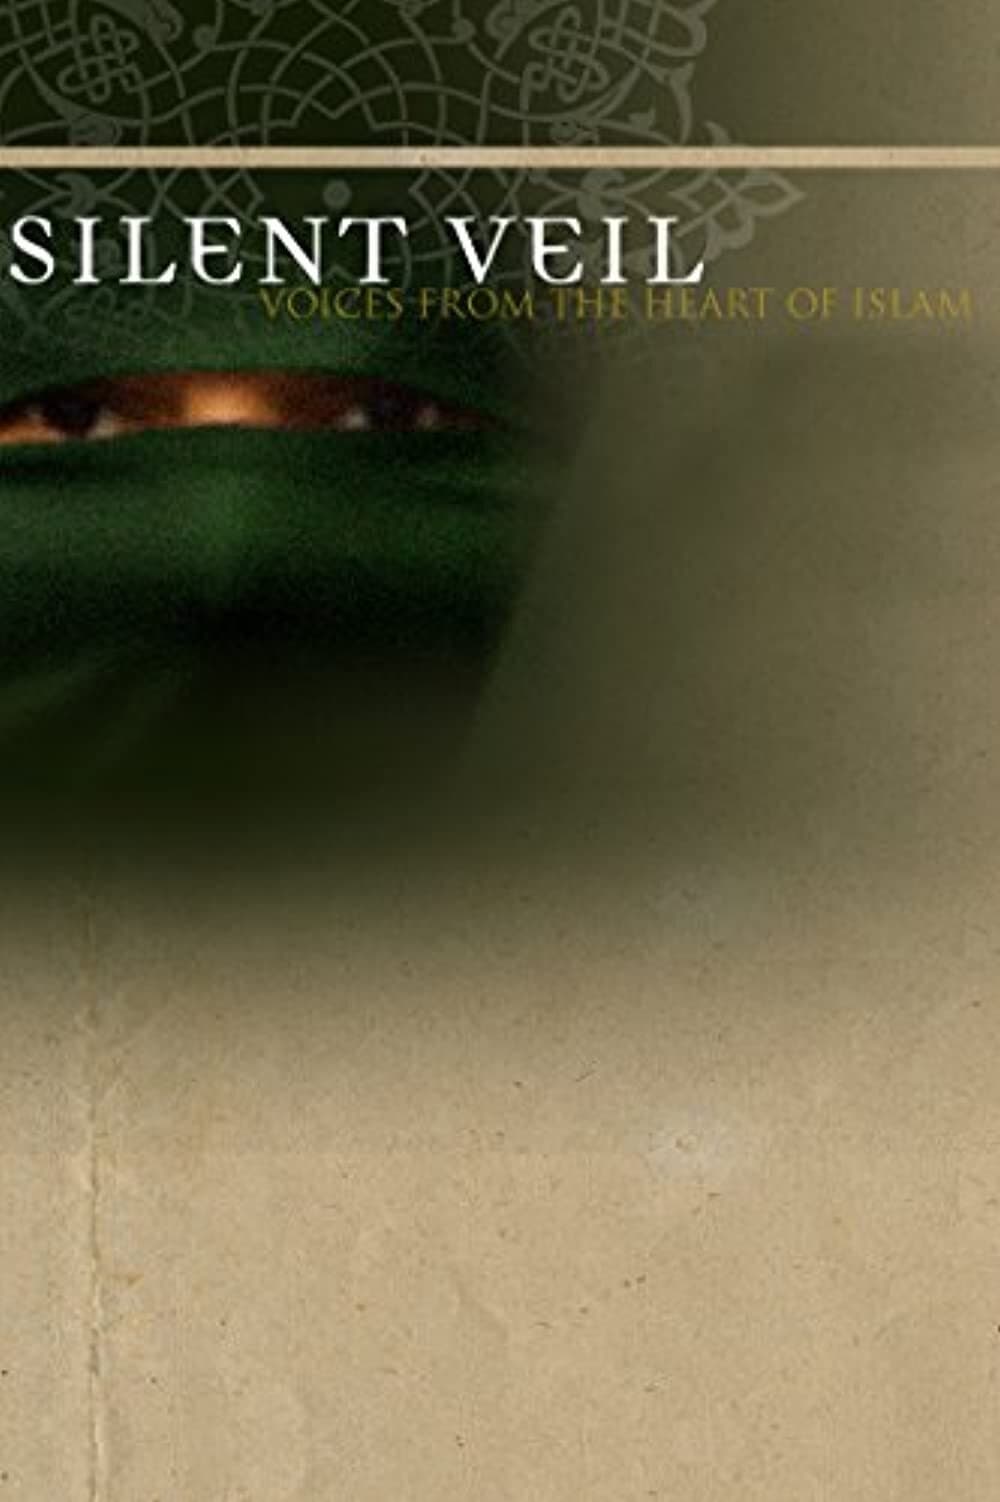 Silent Veil